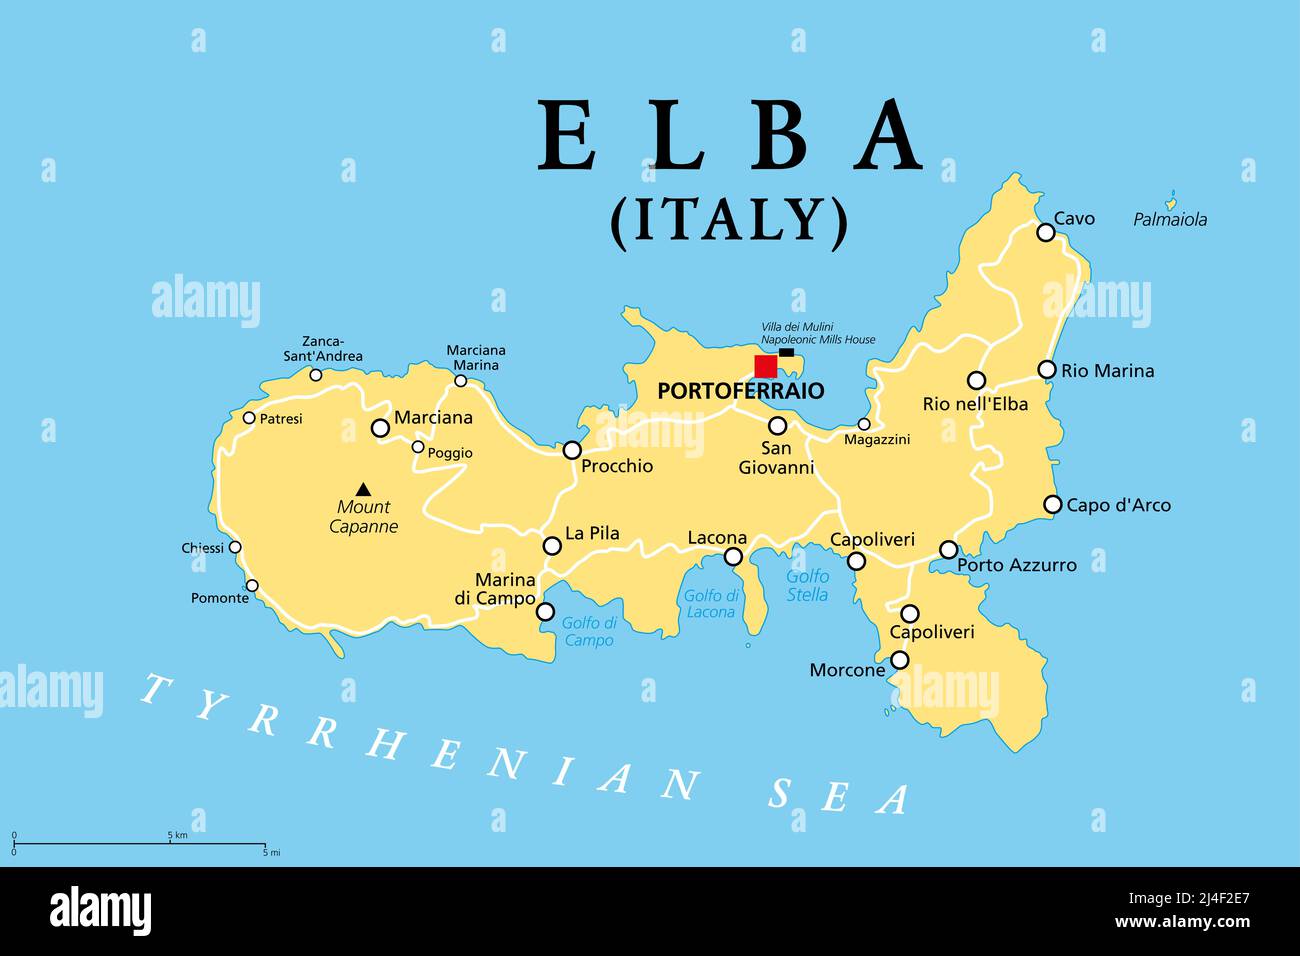 Elba, politische Landkarte, Mittelmeerinsel in der Toskana, Italien, mit Hauptstadt Portoferraio. Ort des ersten Exils Napoleons. Stockfoto